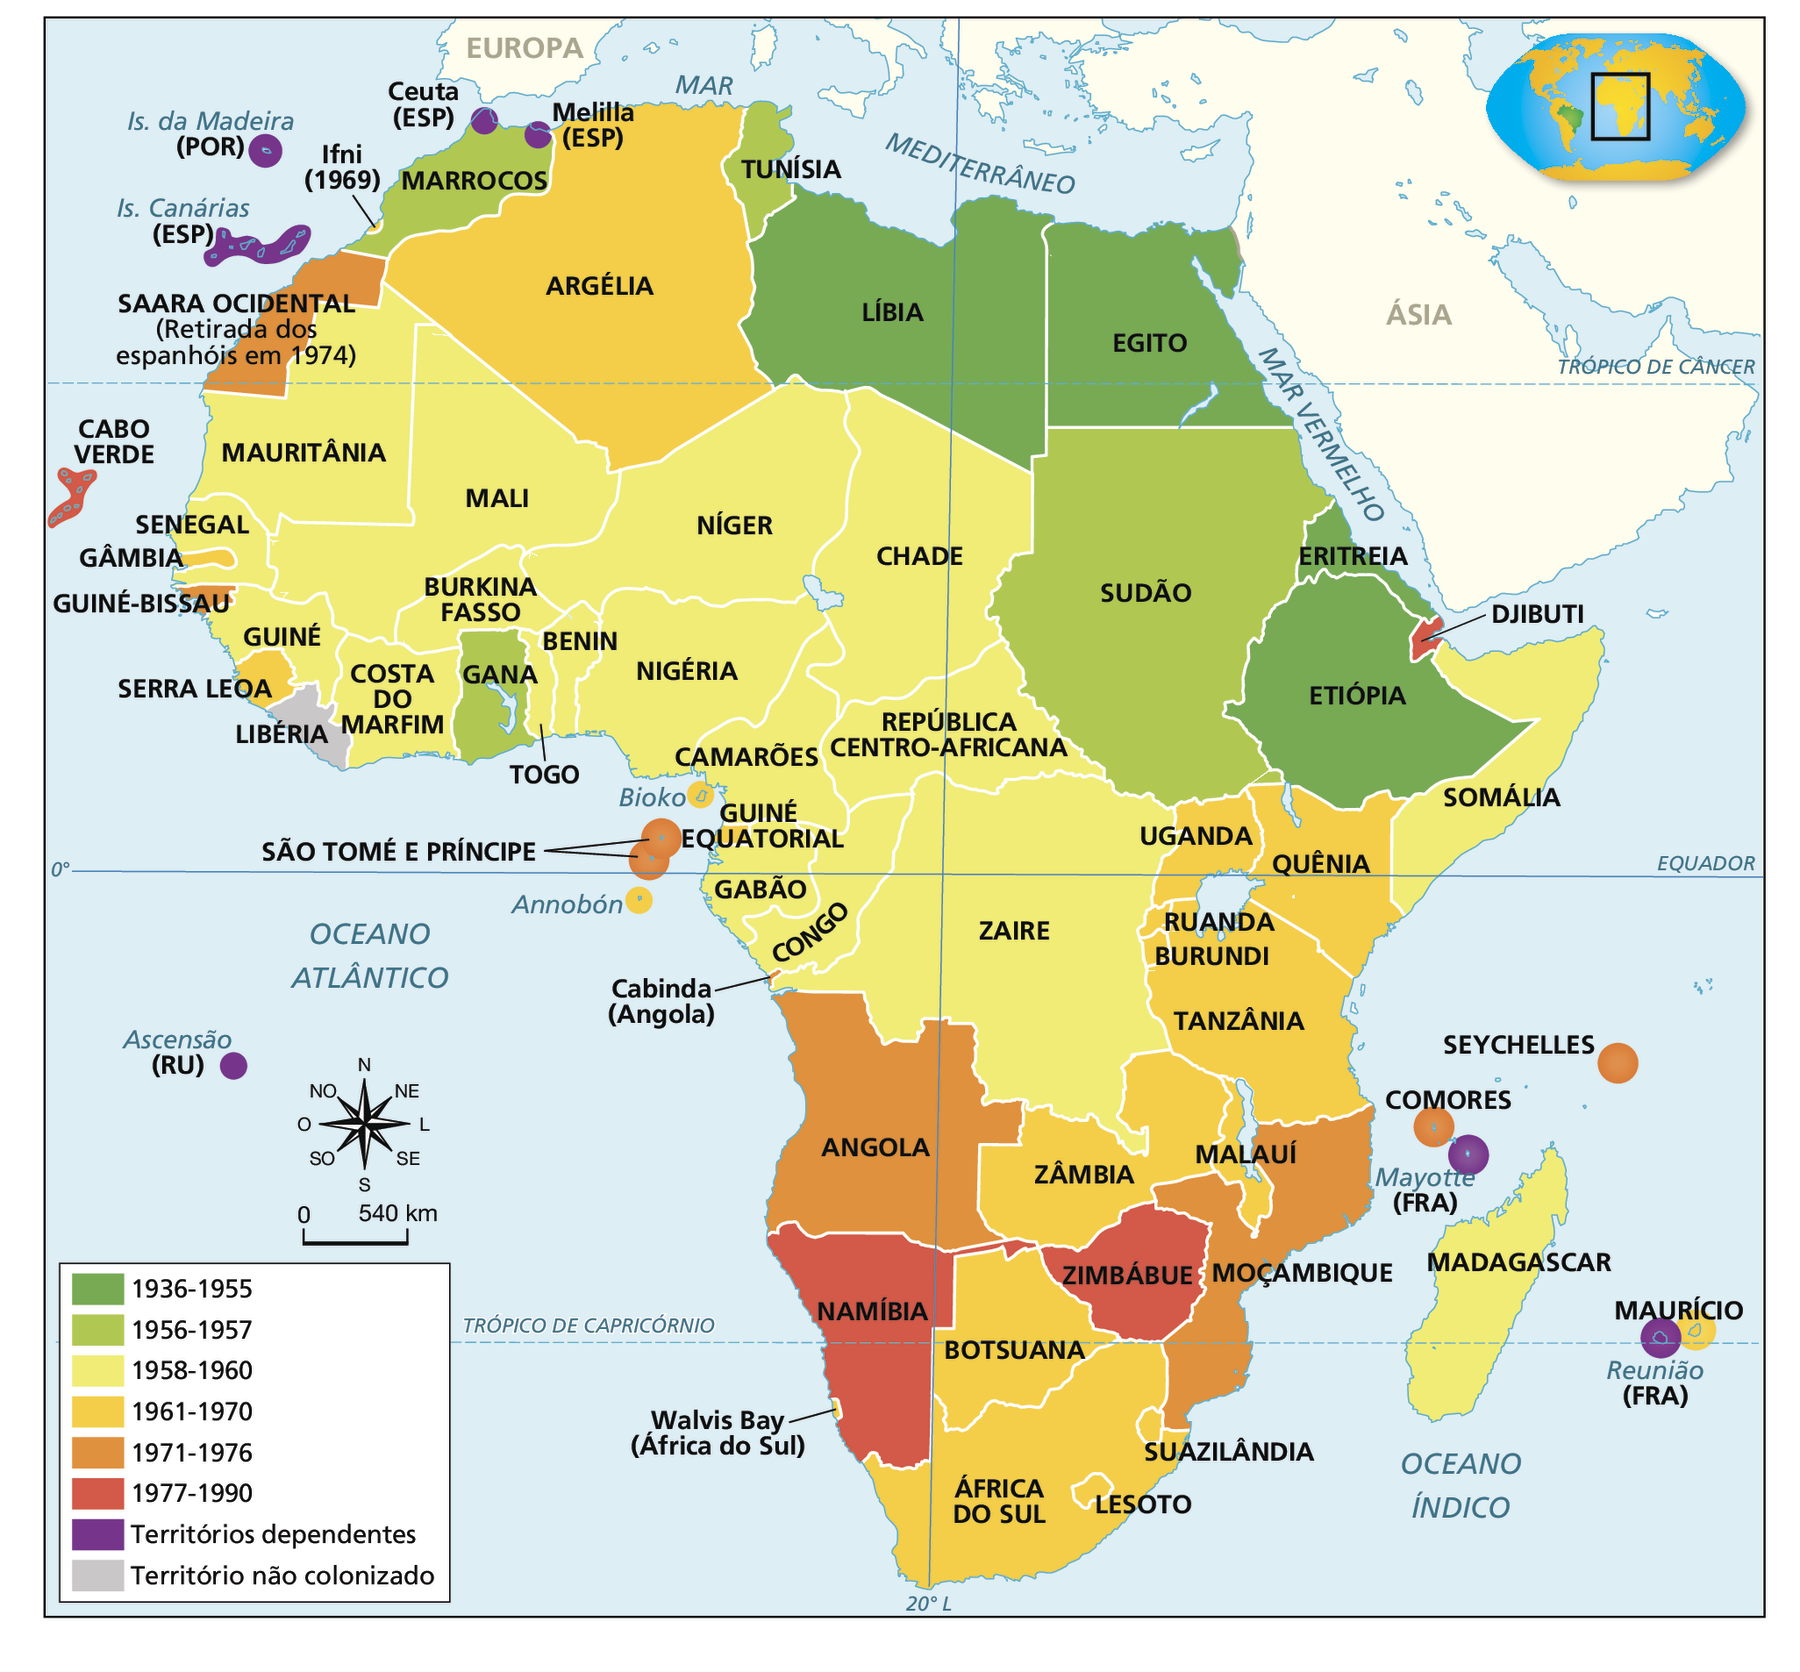 Mapa. Independências na África (século vinte). Continente africano. Em verde escuro, de 1936 a 1955: Líbia, Egito, Eritreia e Etiópia. Em verde claro, de 1956 a 1957:  Marrocos, Tunísia, Sudão e Gana. Em amarelo claro,  de 1958 a 1960: Mauritânia, Senegal, Guiné, Costa do Marfim, Mali, Níger, Chade, Burkina Fasso, Benin, Togo, Nigéria, República Centro-Africana, Camarões, Zaire, Gabão, Congo, Somália e Madagascar. Em amarelo escuro, de 1961 a 1970: Argélia, Ifni, Gâmbia, Serra Leoa, Bioko, Annobón, Guiné Equatorial, Uganda, Quênia, Ruanda, Burundi, Tanzânia, Malauí, Zâmbia, Botsuana, África do Sul, Lesoto, Suazilândia e Maurício. Em laranja, de 1971 a 1976: Saara Ocidental, Guiné-Bissau, São Tomé, Príncipe, Angola, Moçambique, Comores e Seychelles. Em vermelho, de 1977 a 1990: Cabo Verde, Namíbia, Zimbábue e Djibuti. Em roxo, 'Territórios dependentes': Ilhas da Madeira (Portugal), Ceuta (Espanha), Melilla (Espanha), Ilhas Canárias (Espanha), Ascensão (Reino Unido), Mayotte (França) e Reunião (França). Em cinza, 'Território não colonizado': Libéria. No canto inferior esquerdo, rosa dos ventos e escala de 0 a 540 quilômetros.